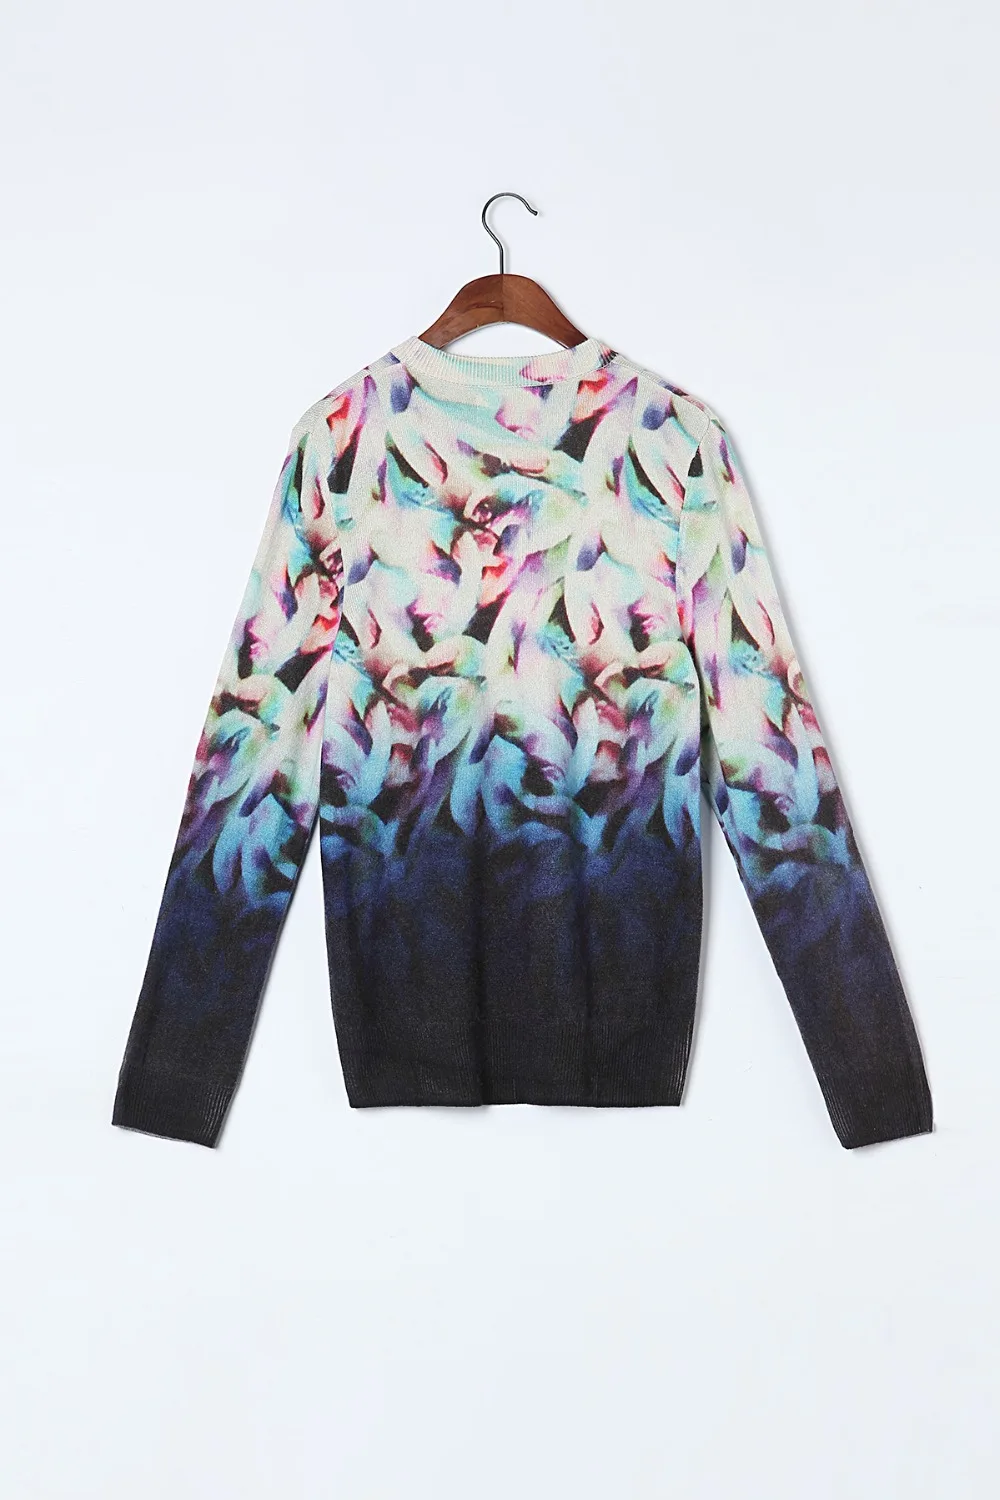 Bogeda 100 кашемировый свитер женский круглый вырез фиолетовый Принт Пуловеры в цветочек натуральная ткань мягкий теплый высокое качество